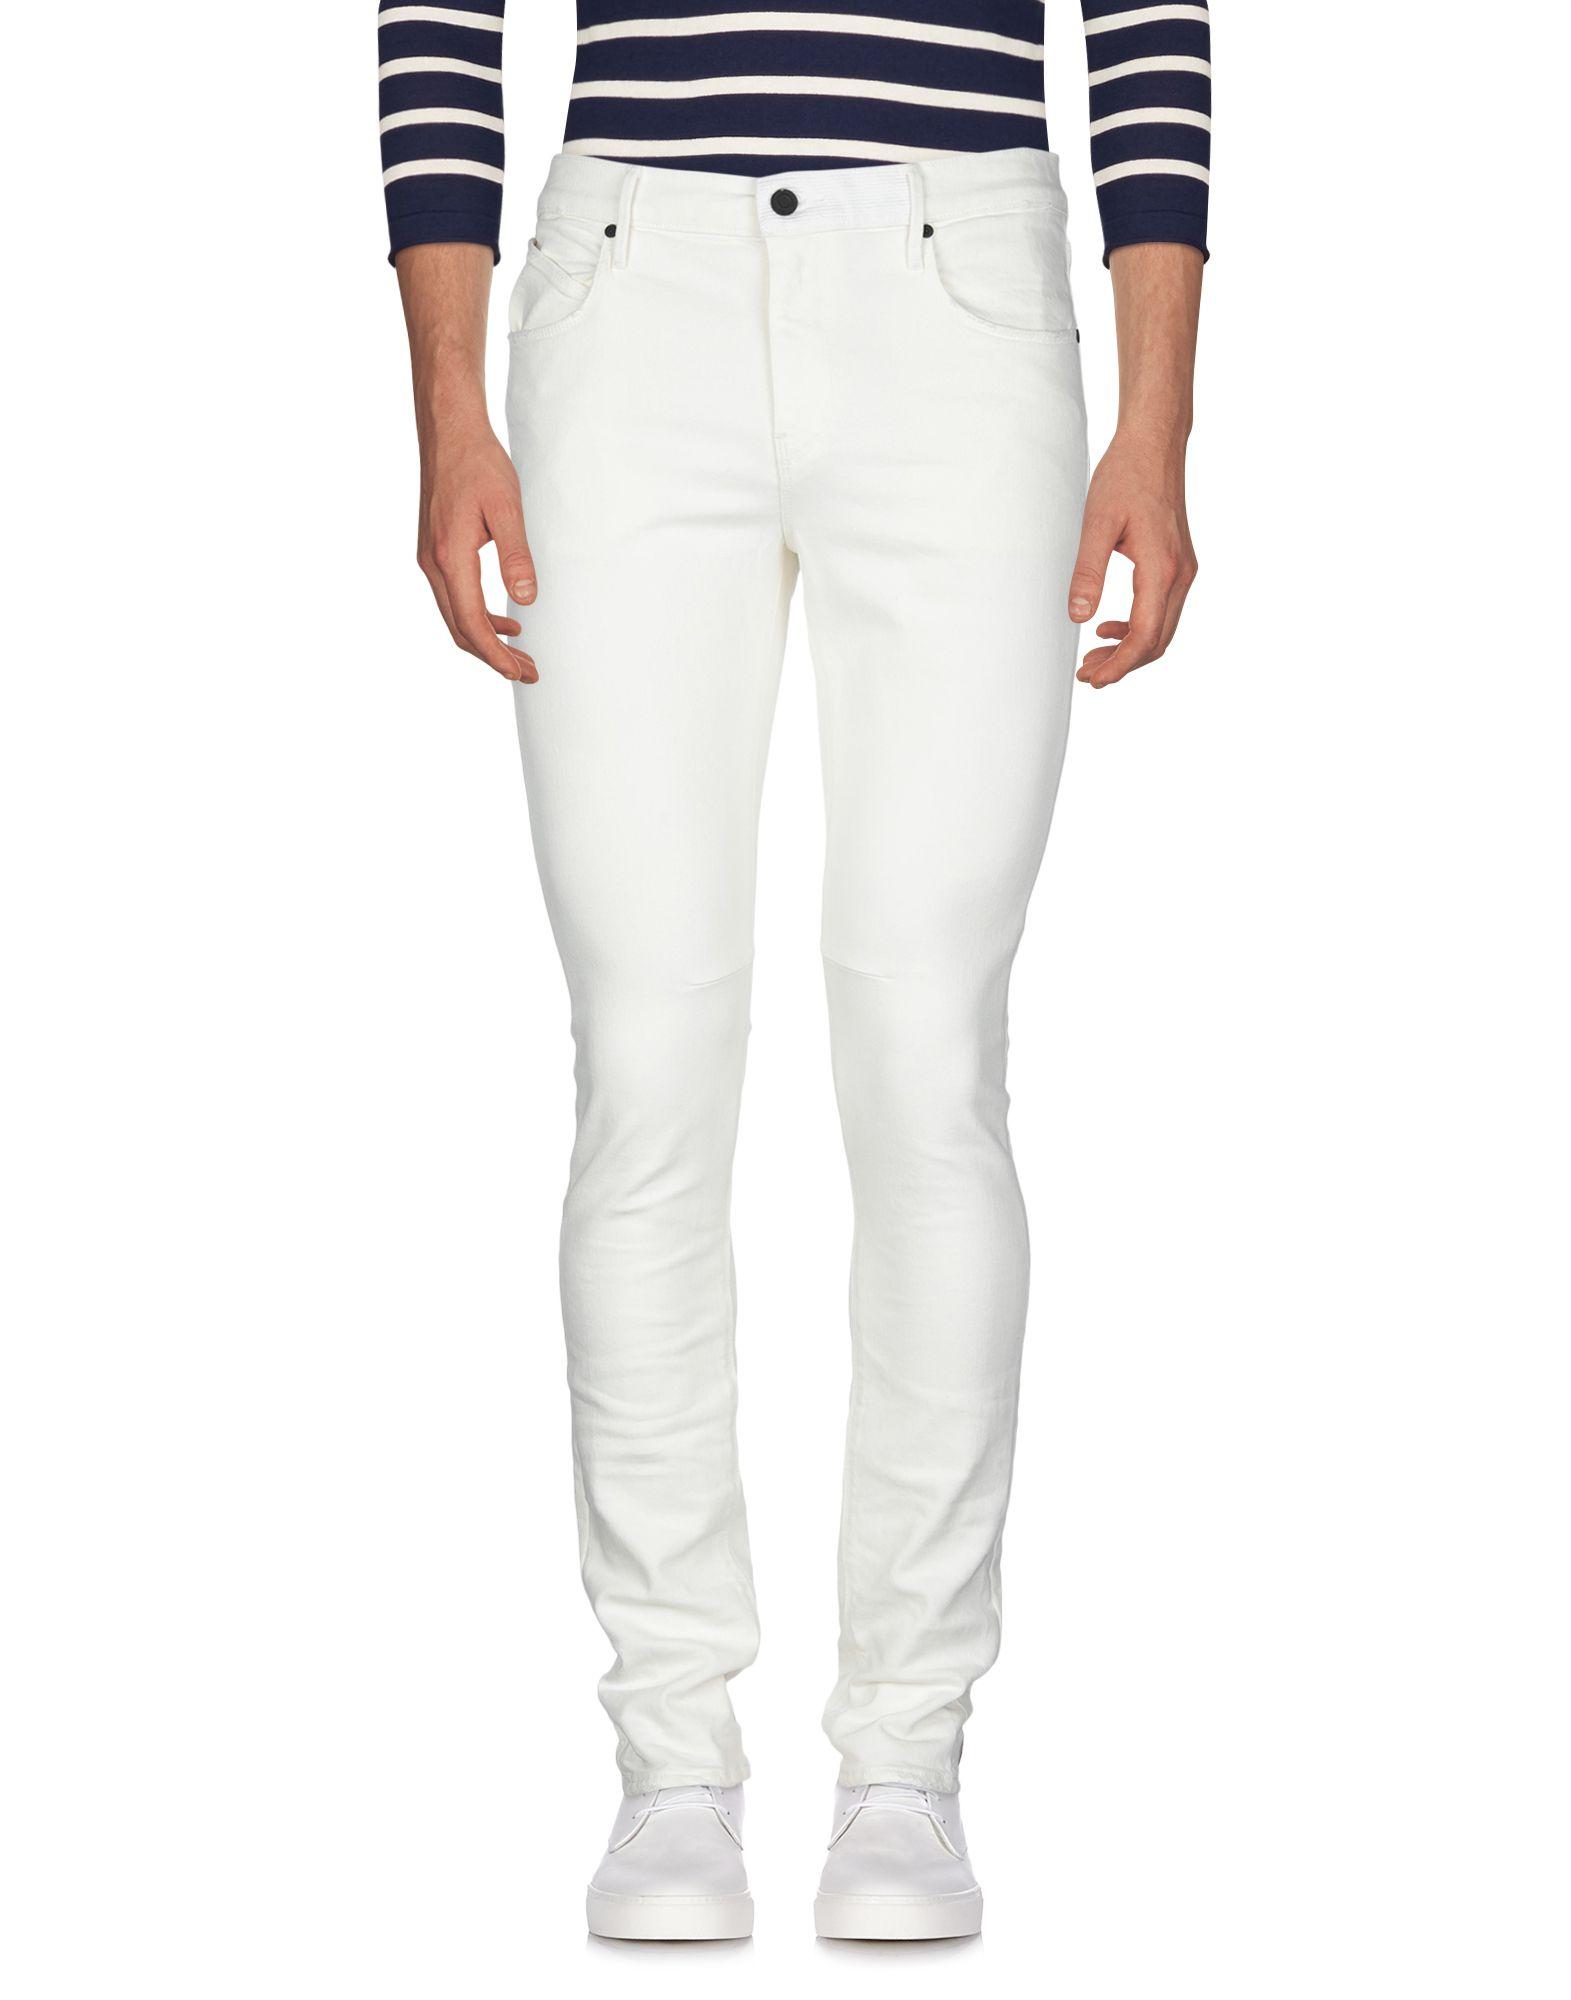 RTA Denim Pants in Ivory (White) for Men - Lyst